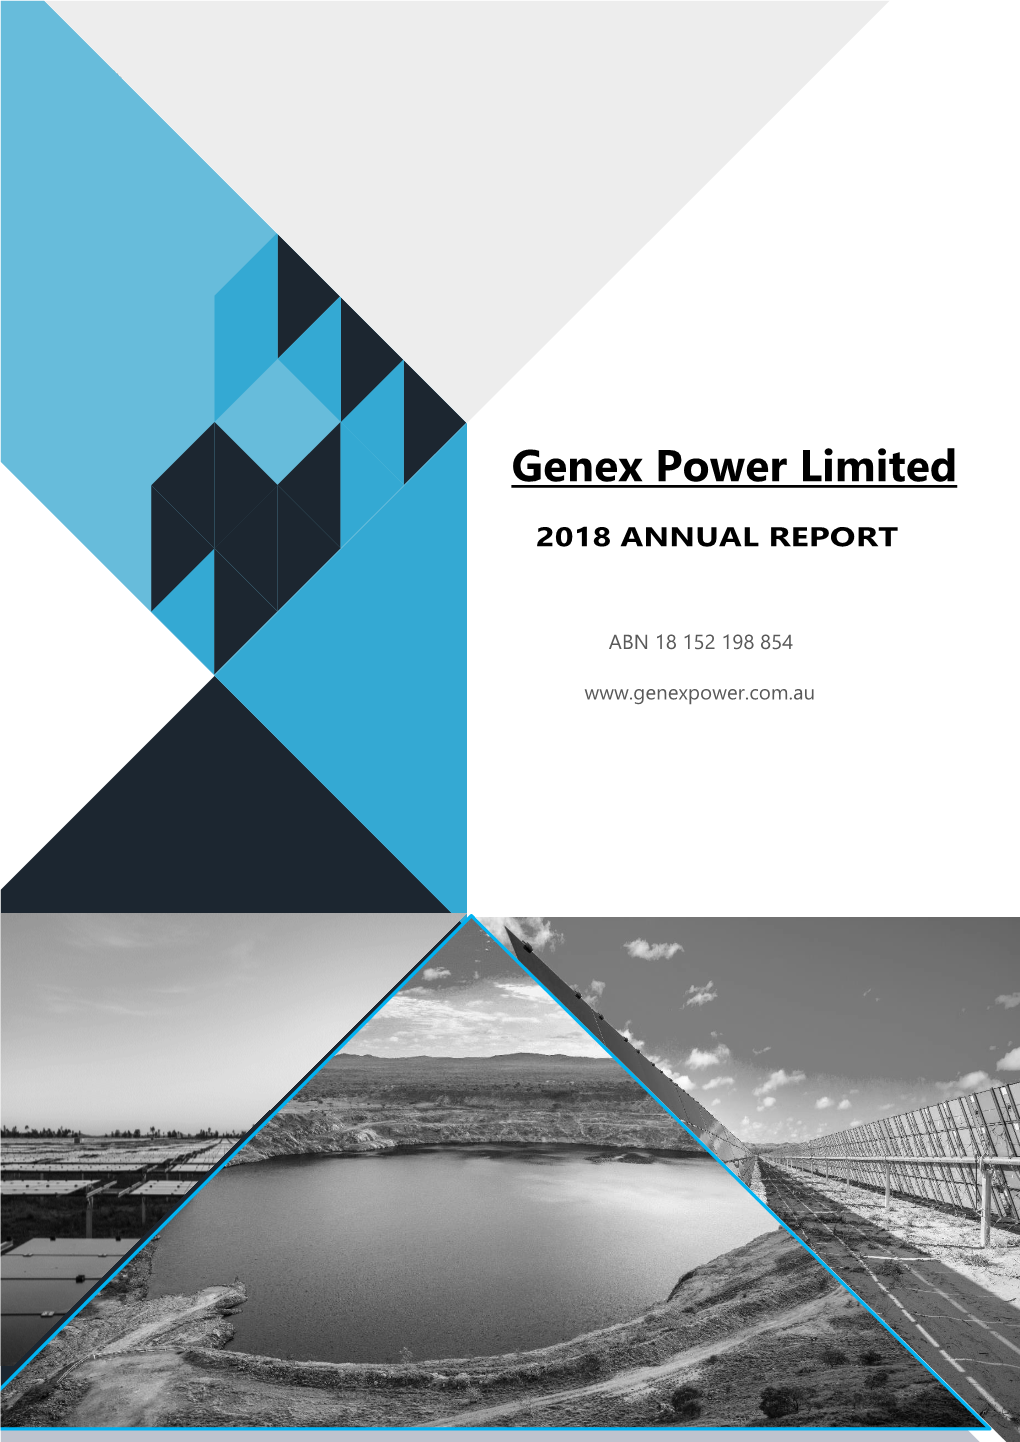 Genex Power Limited